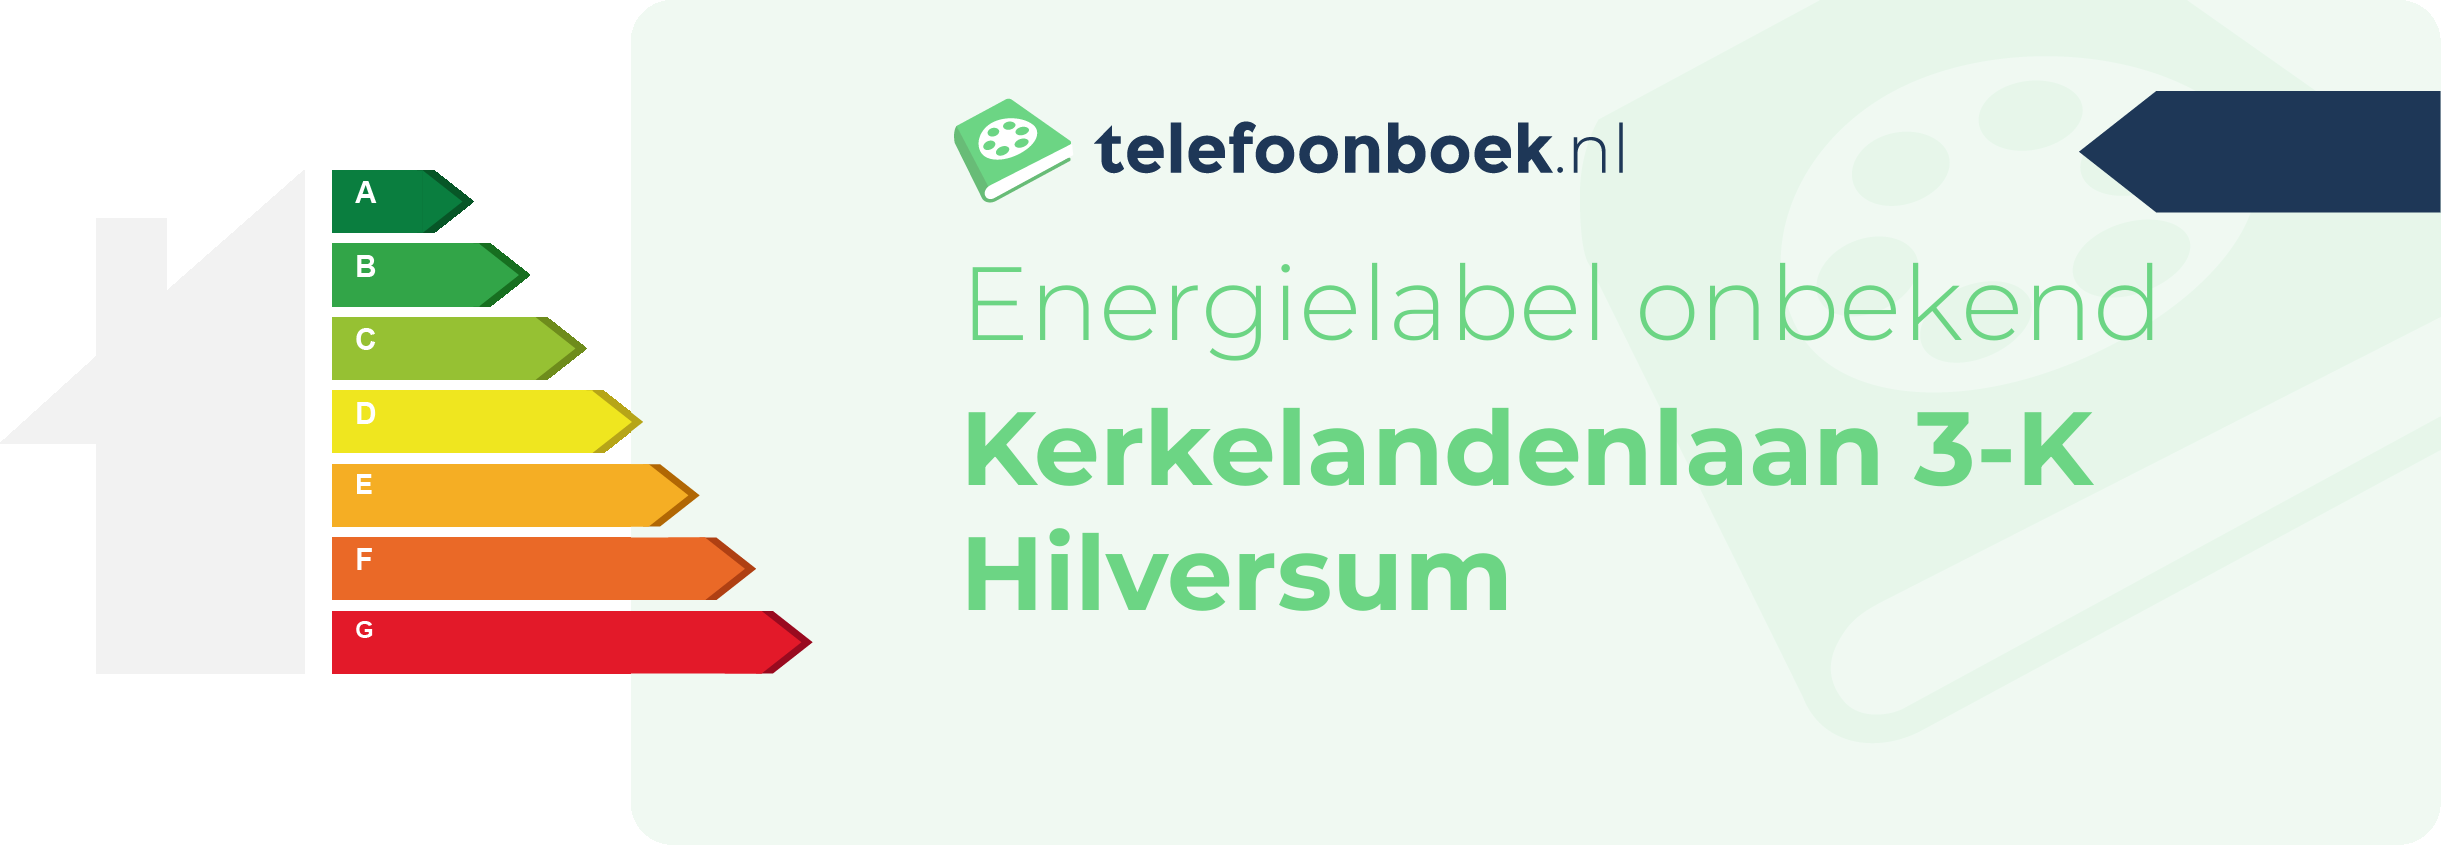 Energielabel Kerkelandenlaan 3-K Hilversum